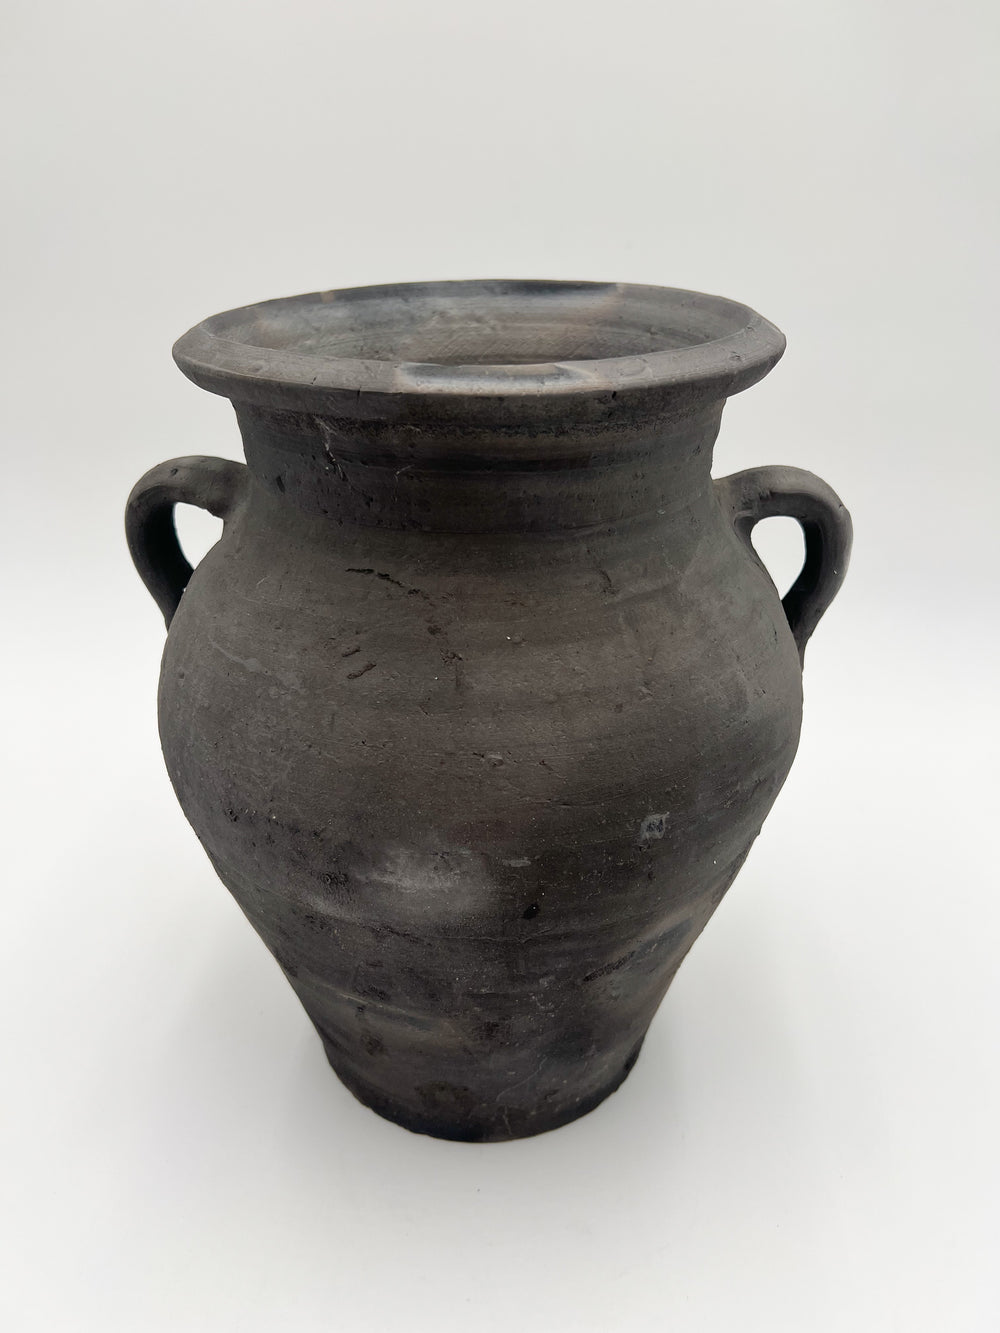 Vintage Handled Vase - One of a Kind (SKU: 32)